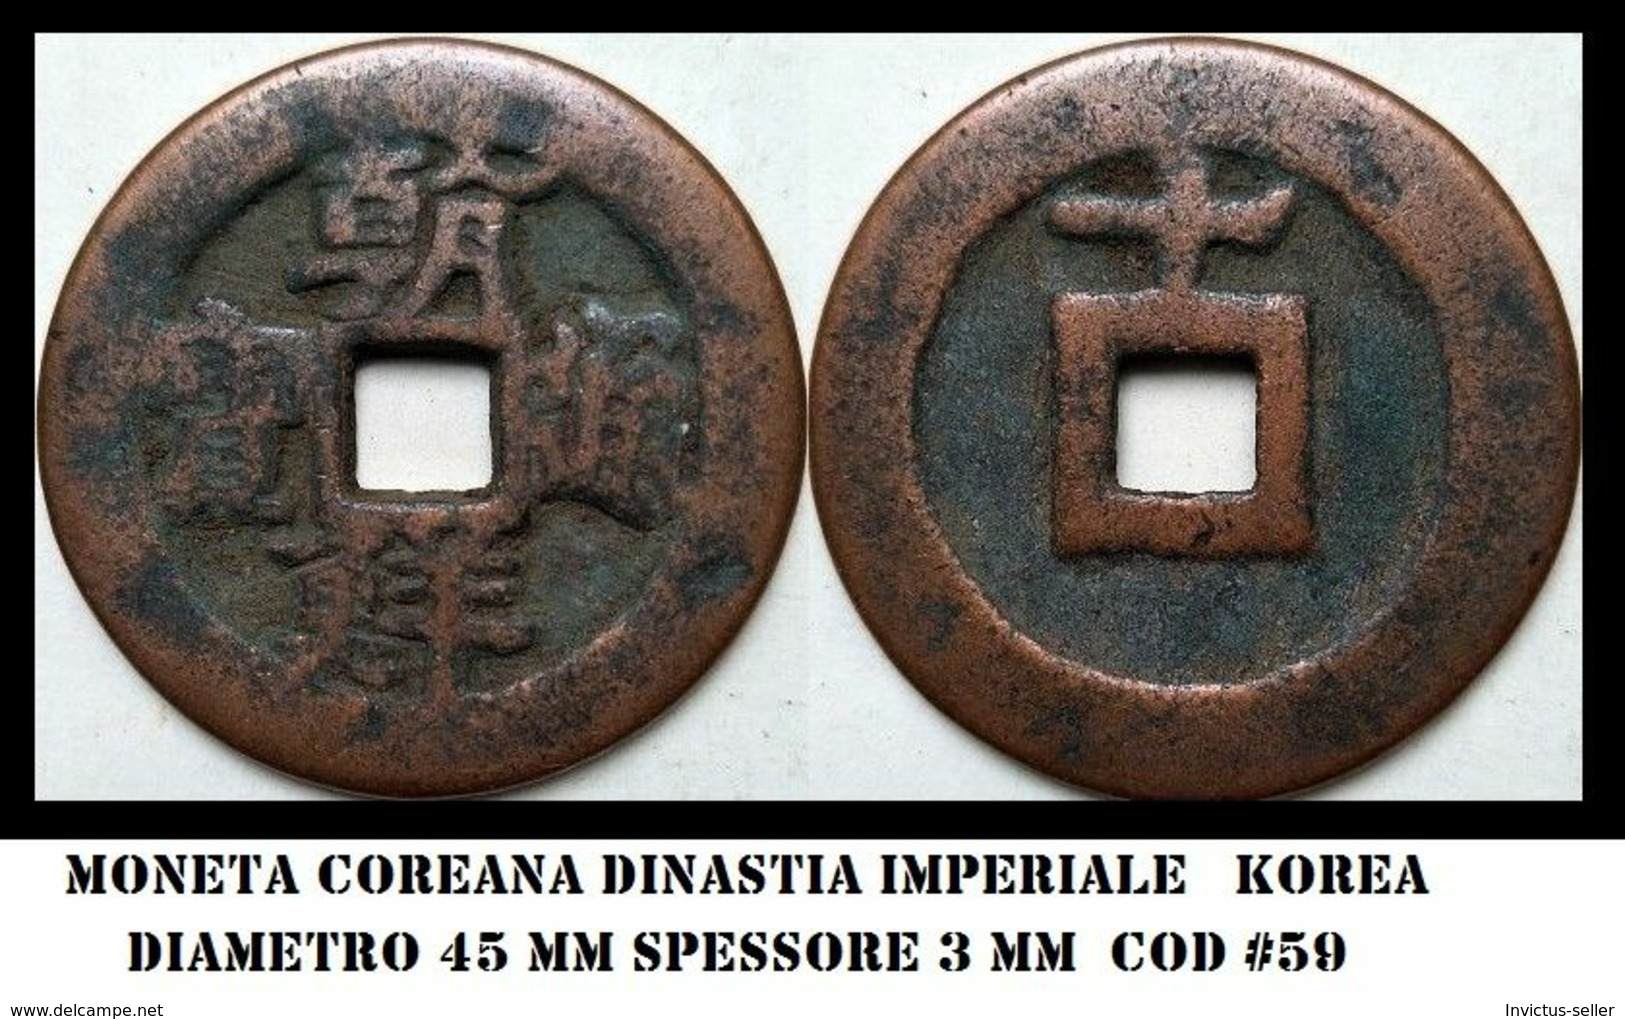 KOREA ANTICA MONETA COREANA PERIODO IMPERIALE IMPERIALE COREANE COINS  PIECES MONET COREA IMPERIAL COD #59 - Korea (Nord-)